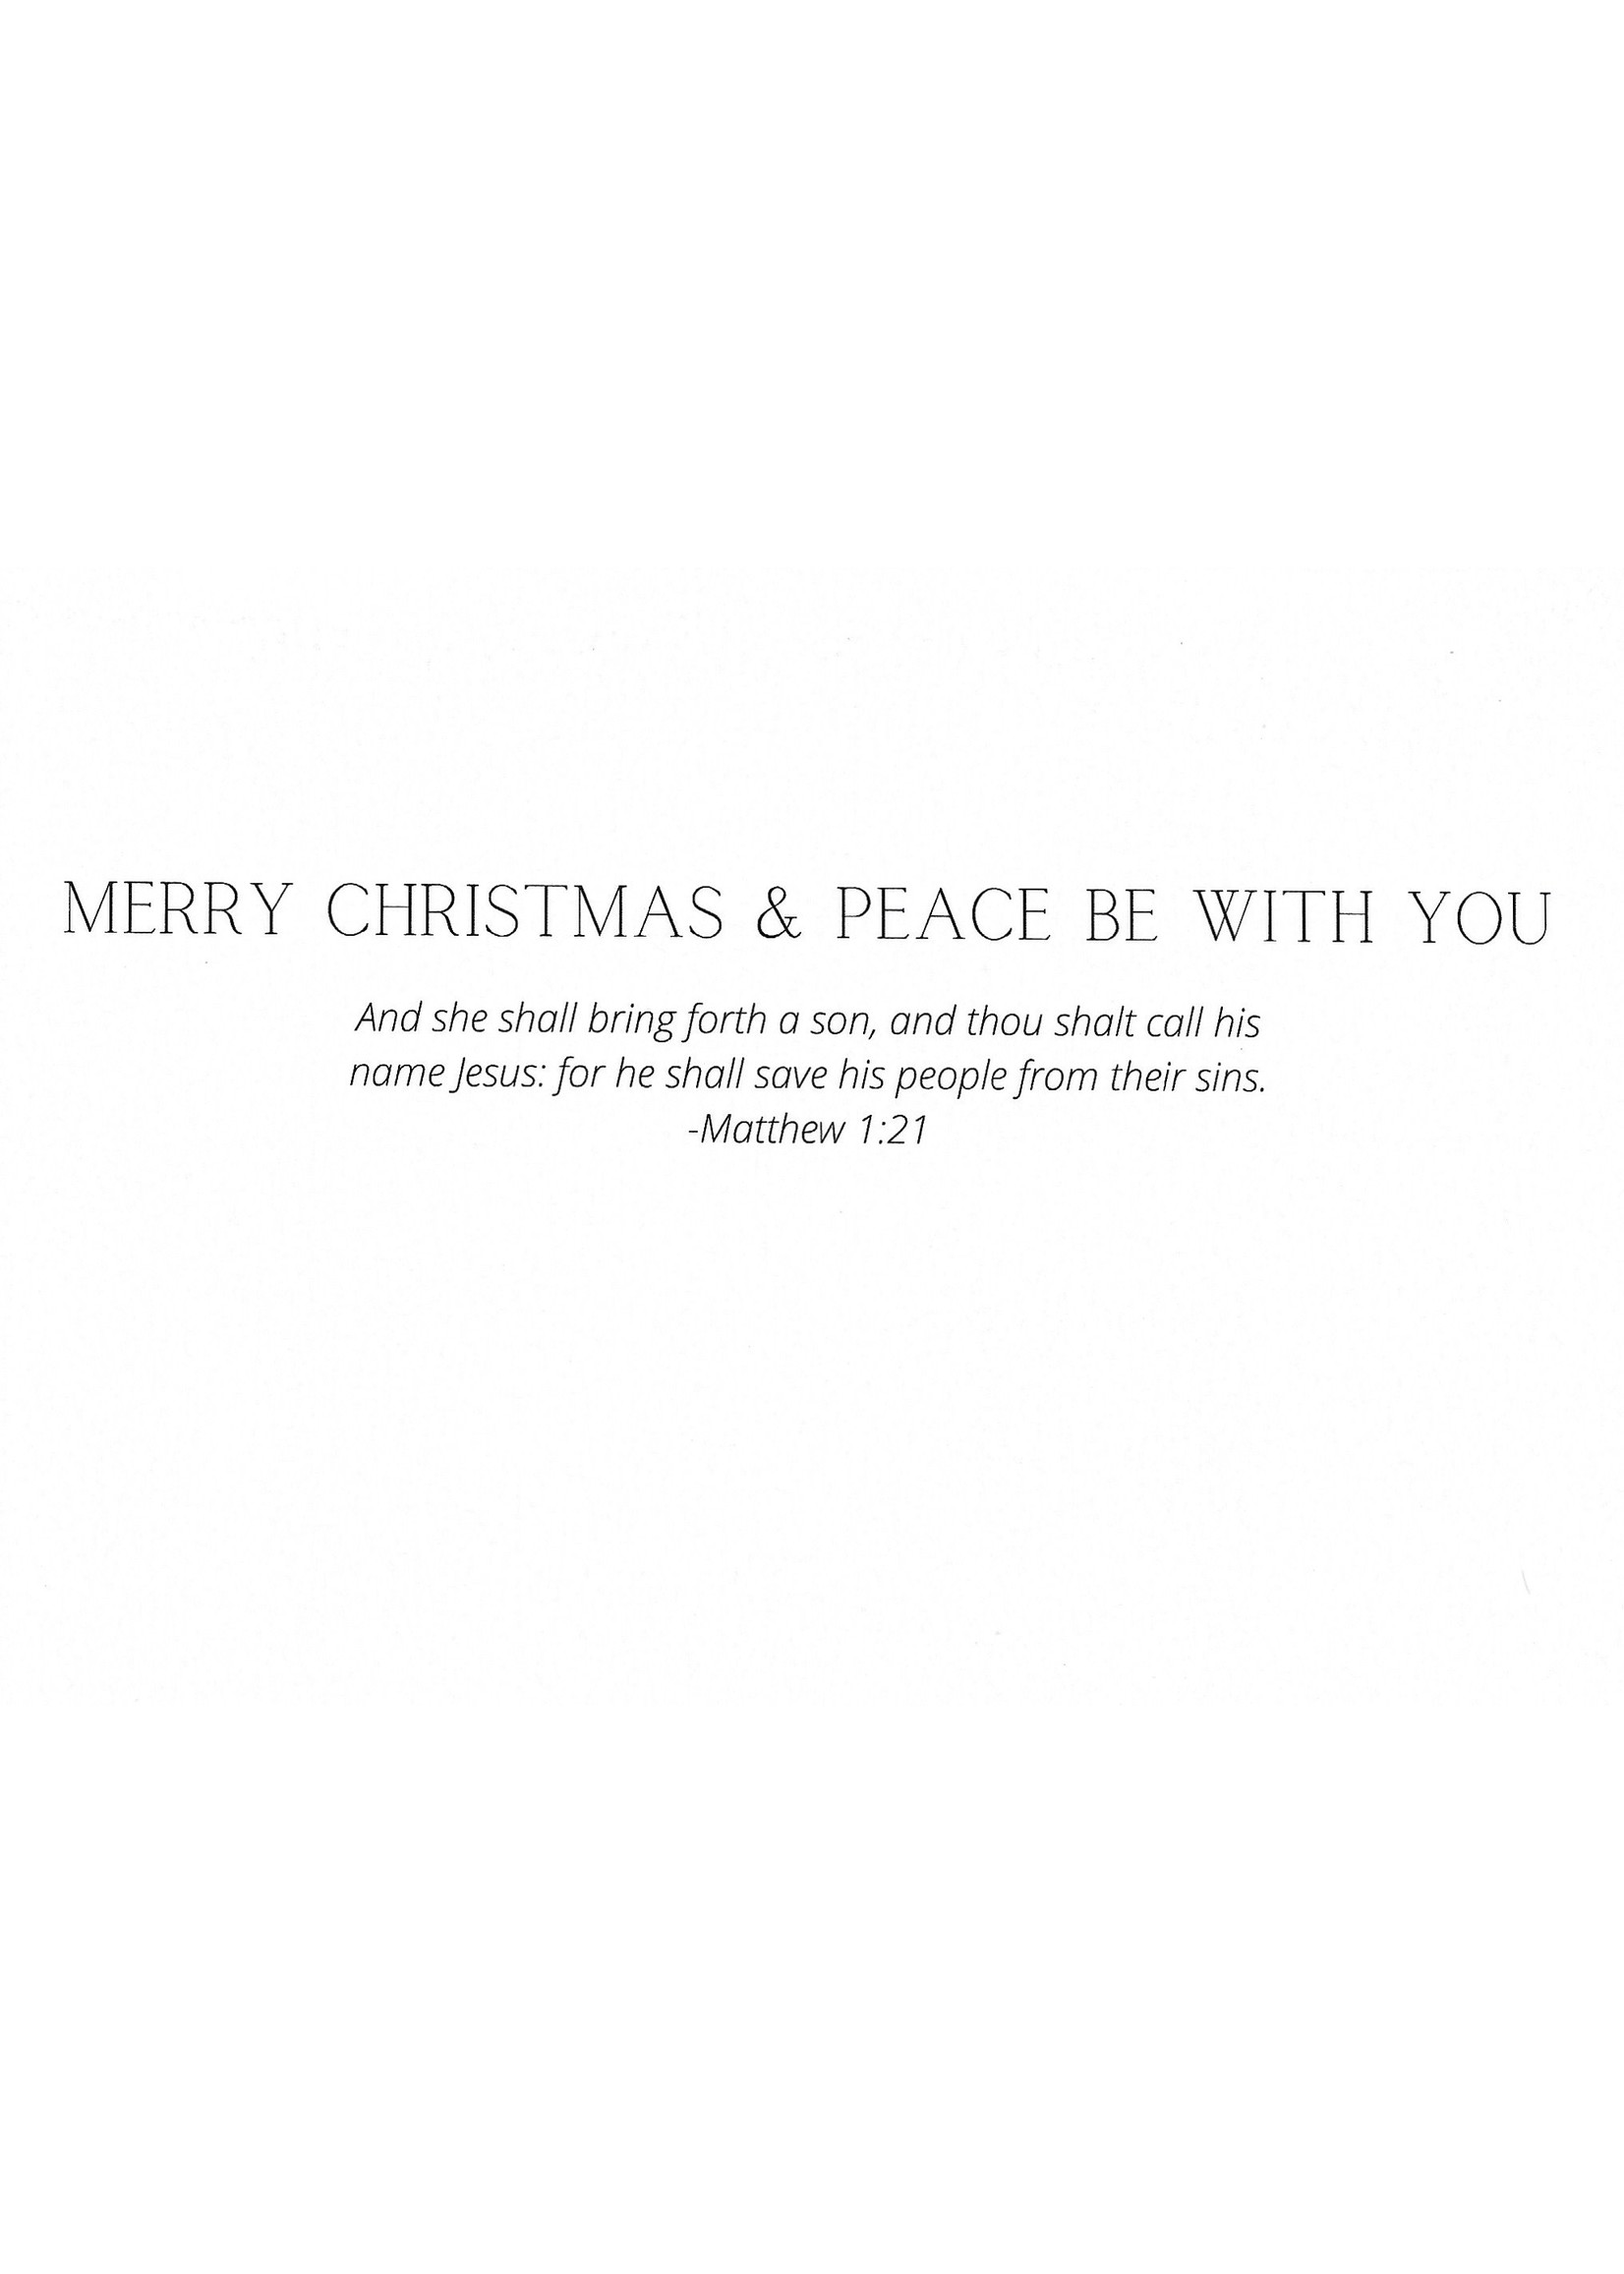 Our Lady of Peace Custom Christmas Card